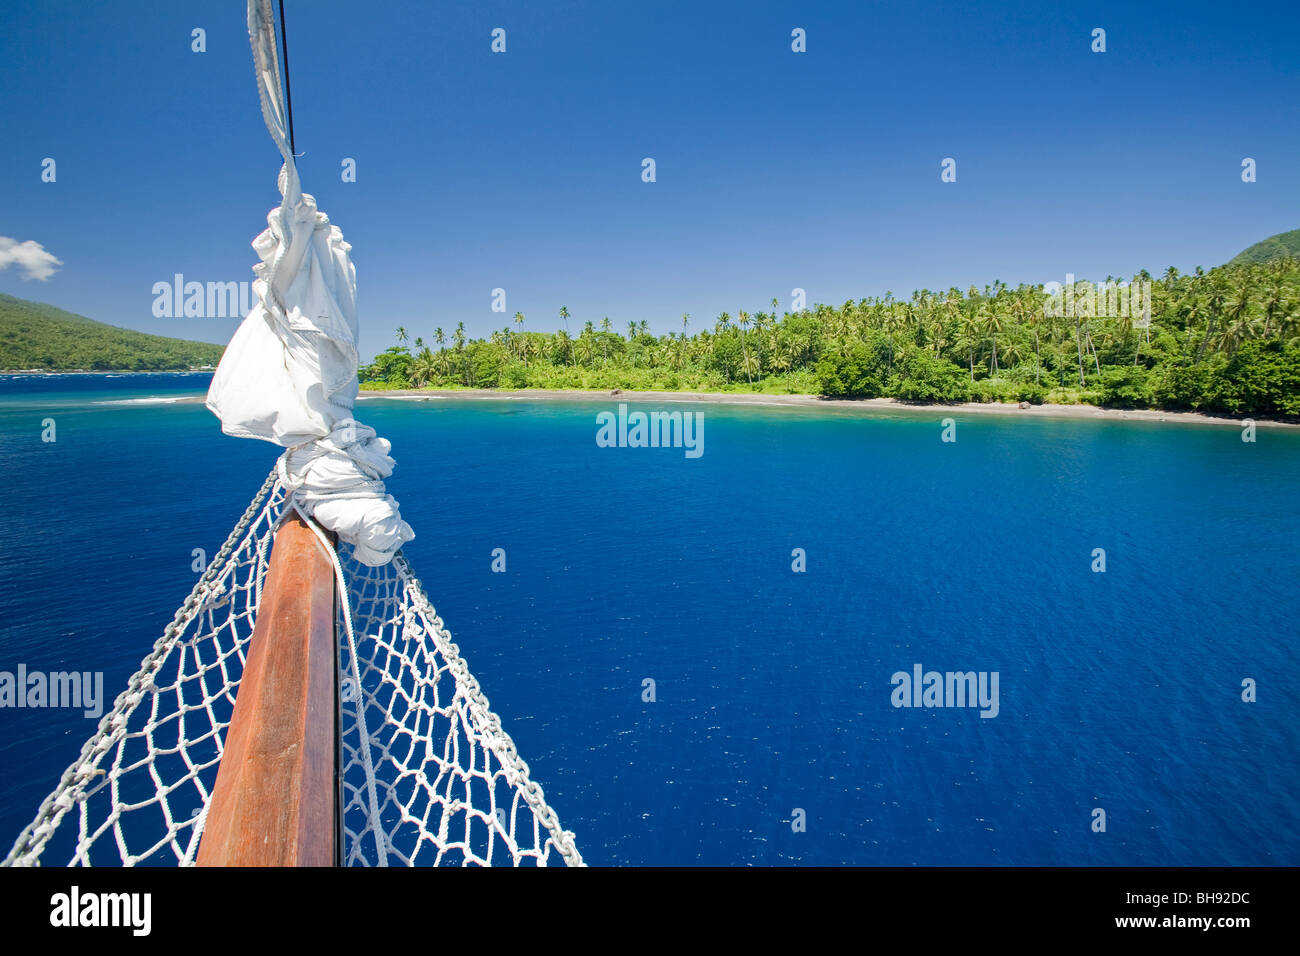 Sailing near Tahulandang Island, Sangihe-Talaud Archipelago, Sulawesi, Indonesia Stock Photo